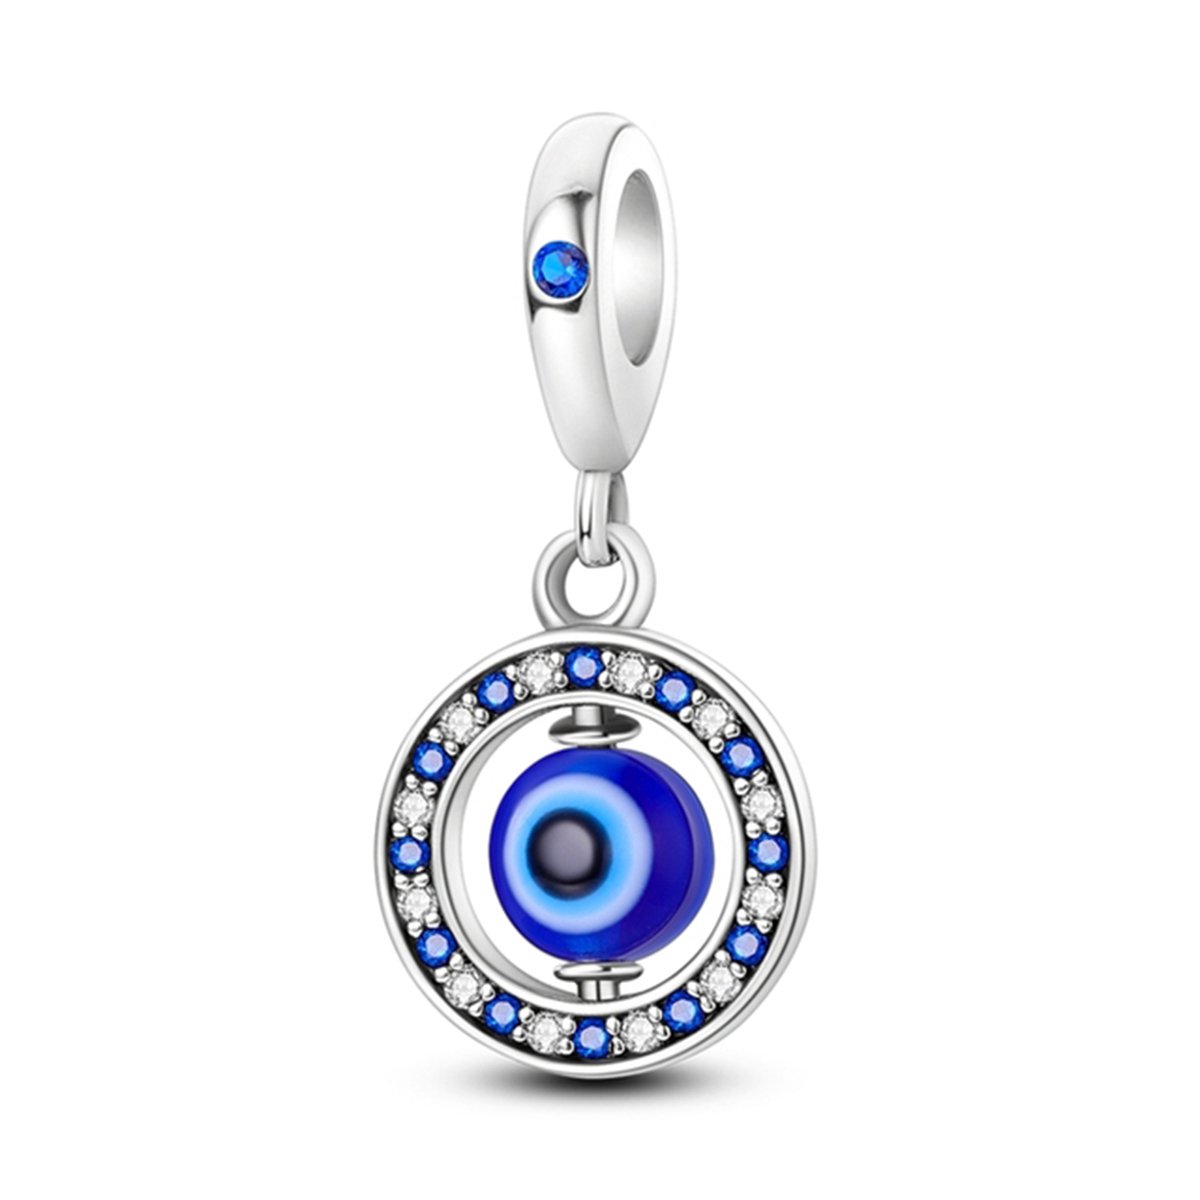 Blue Eye Dangle Charm Voor Armband, Blauw Oog Hangende Bedel, Verjaardagsgeschenken Voor Haar, Moedergeschenken, Oma Geschenken, Keen Jewel